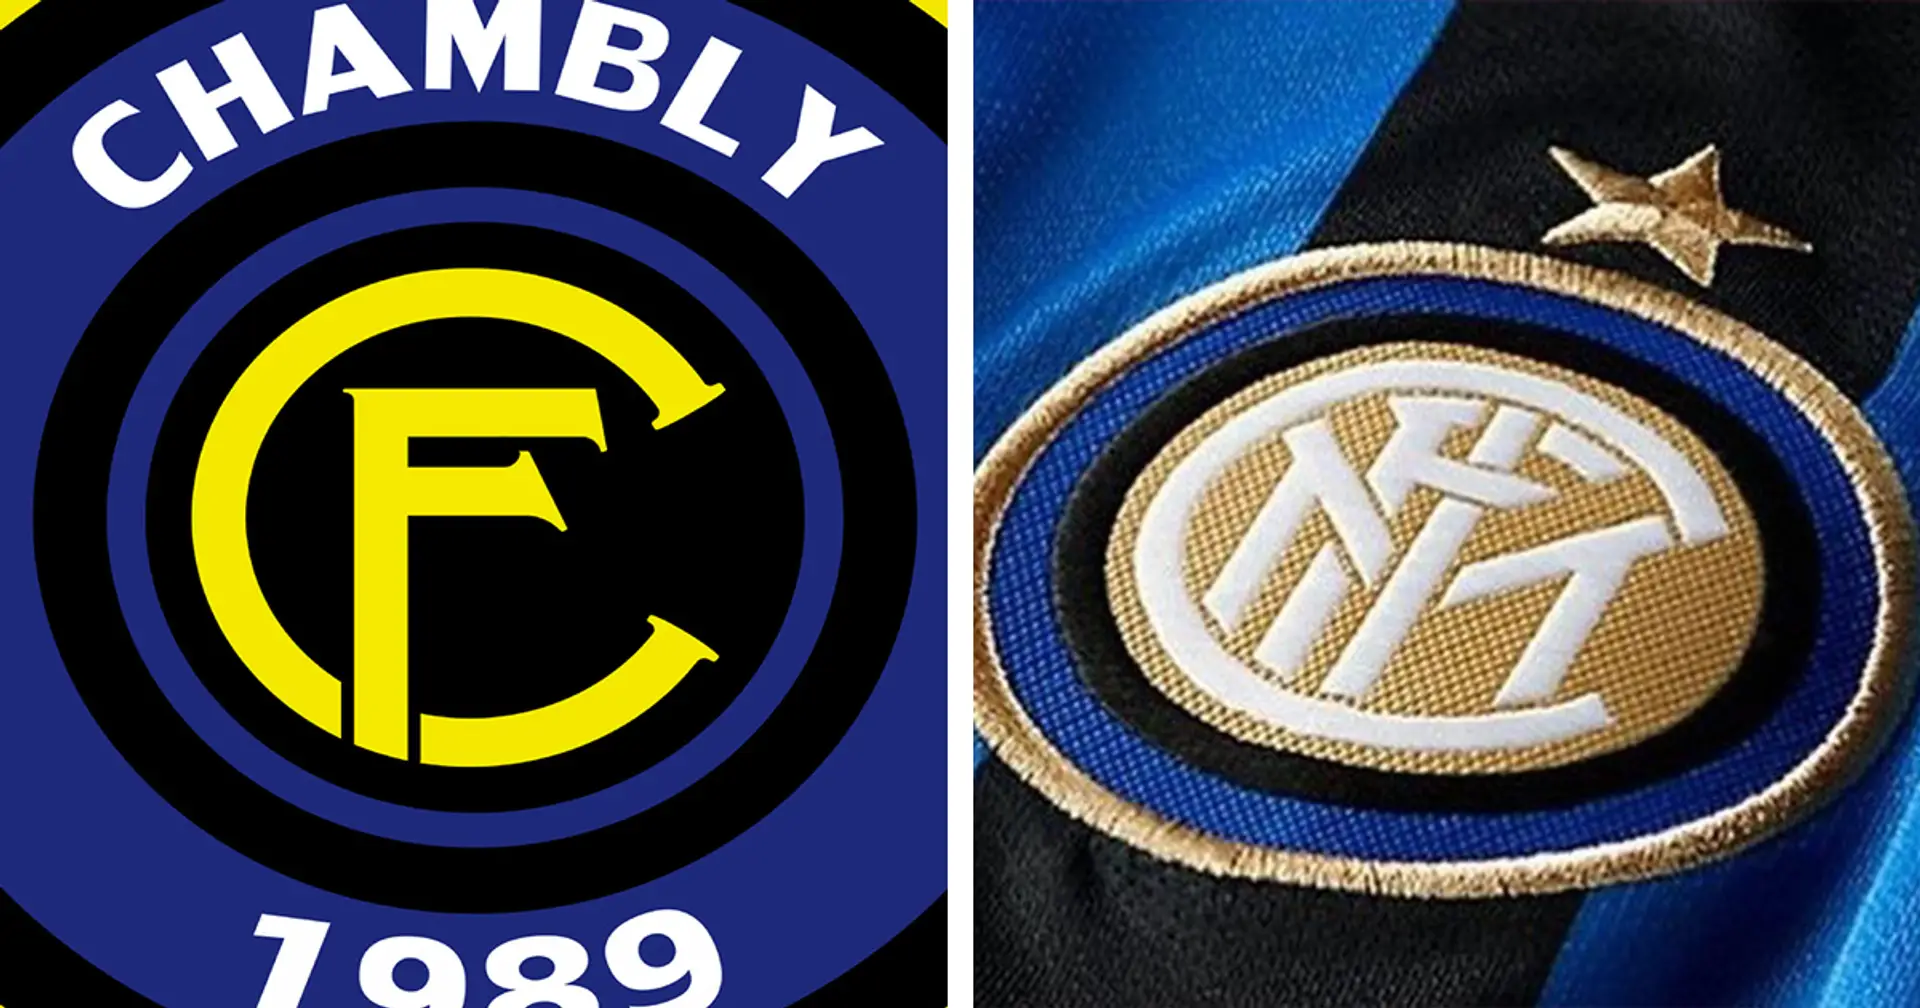 Lo Chambly "ruba" lo stemma all'Inter: il presidente del club francese è tifosissimo della Beneamata